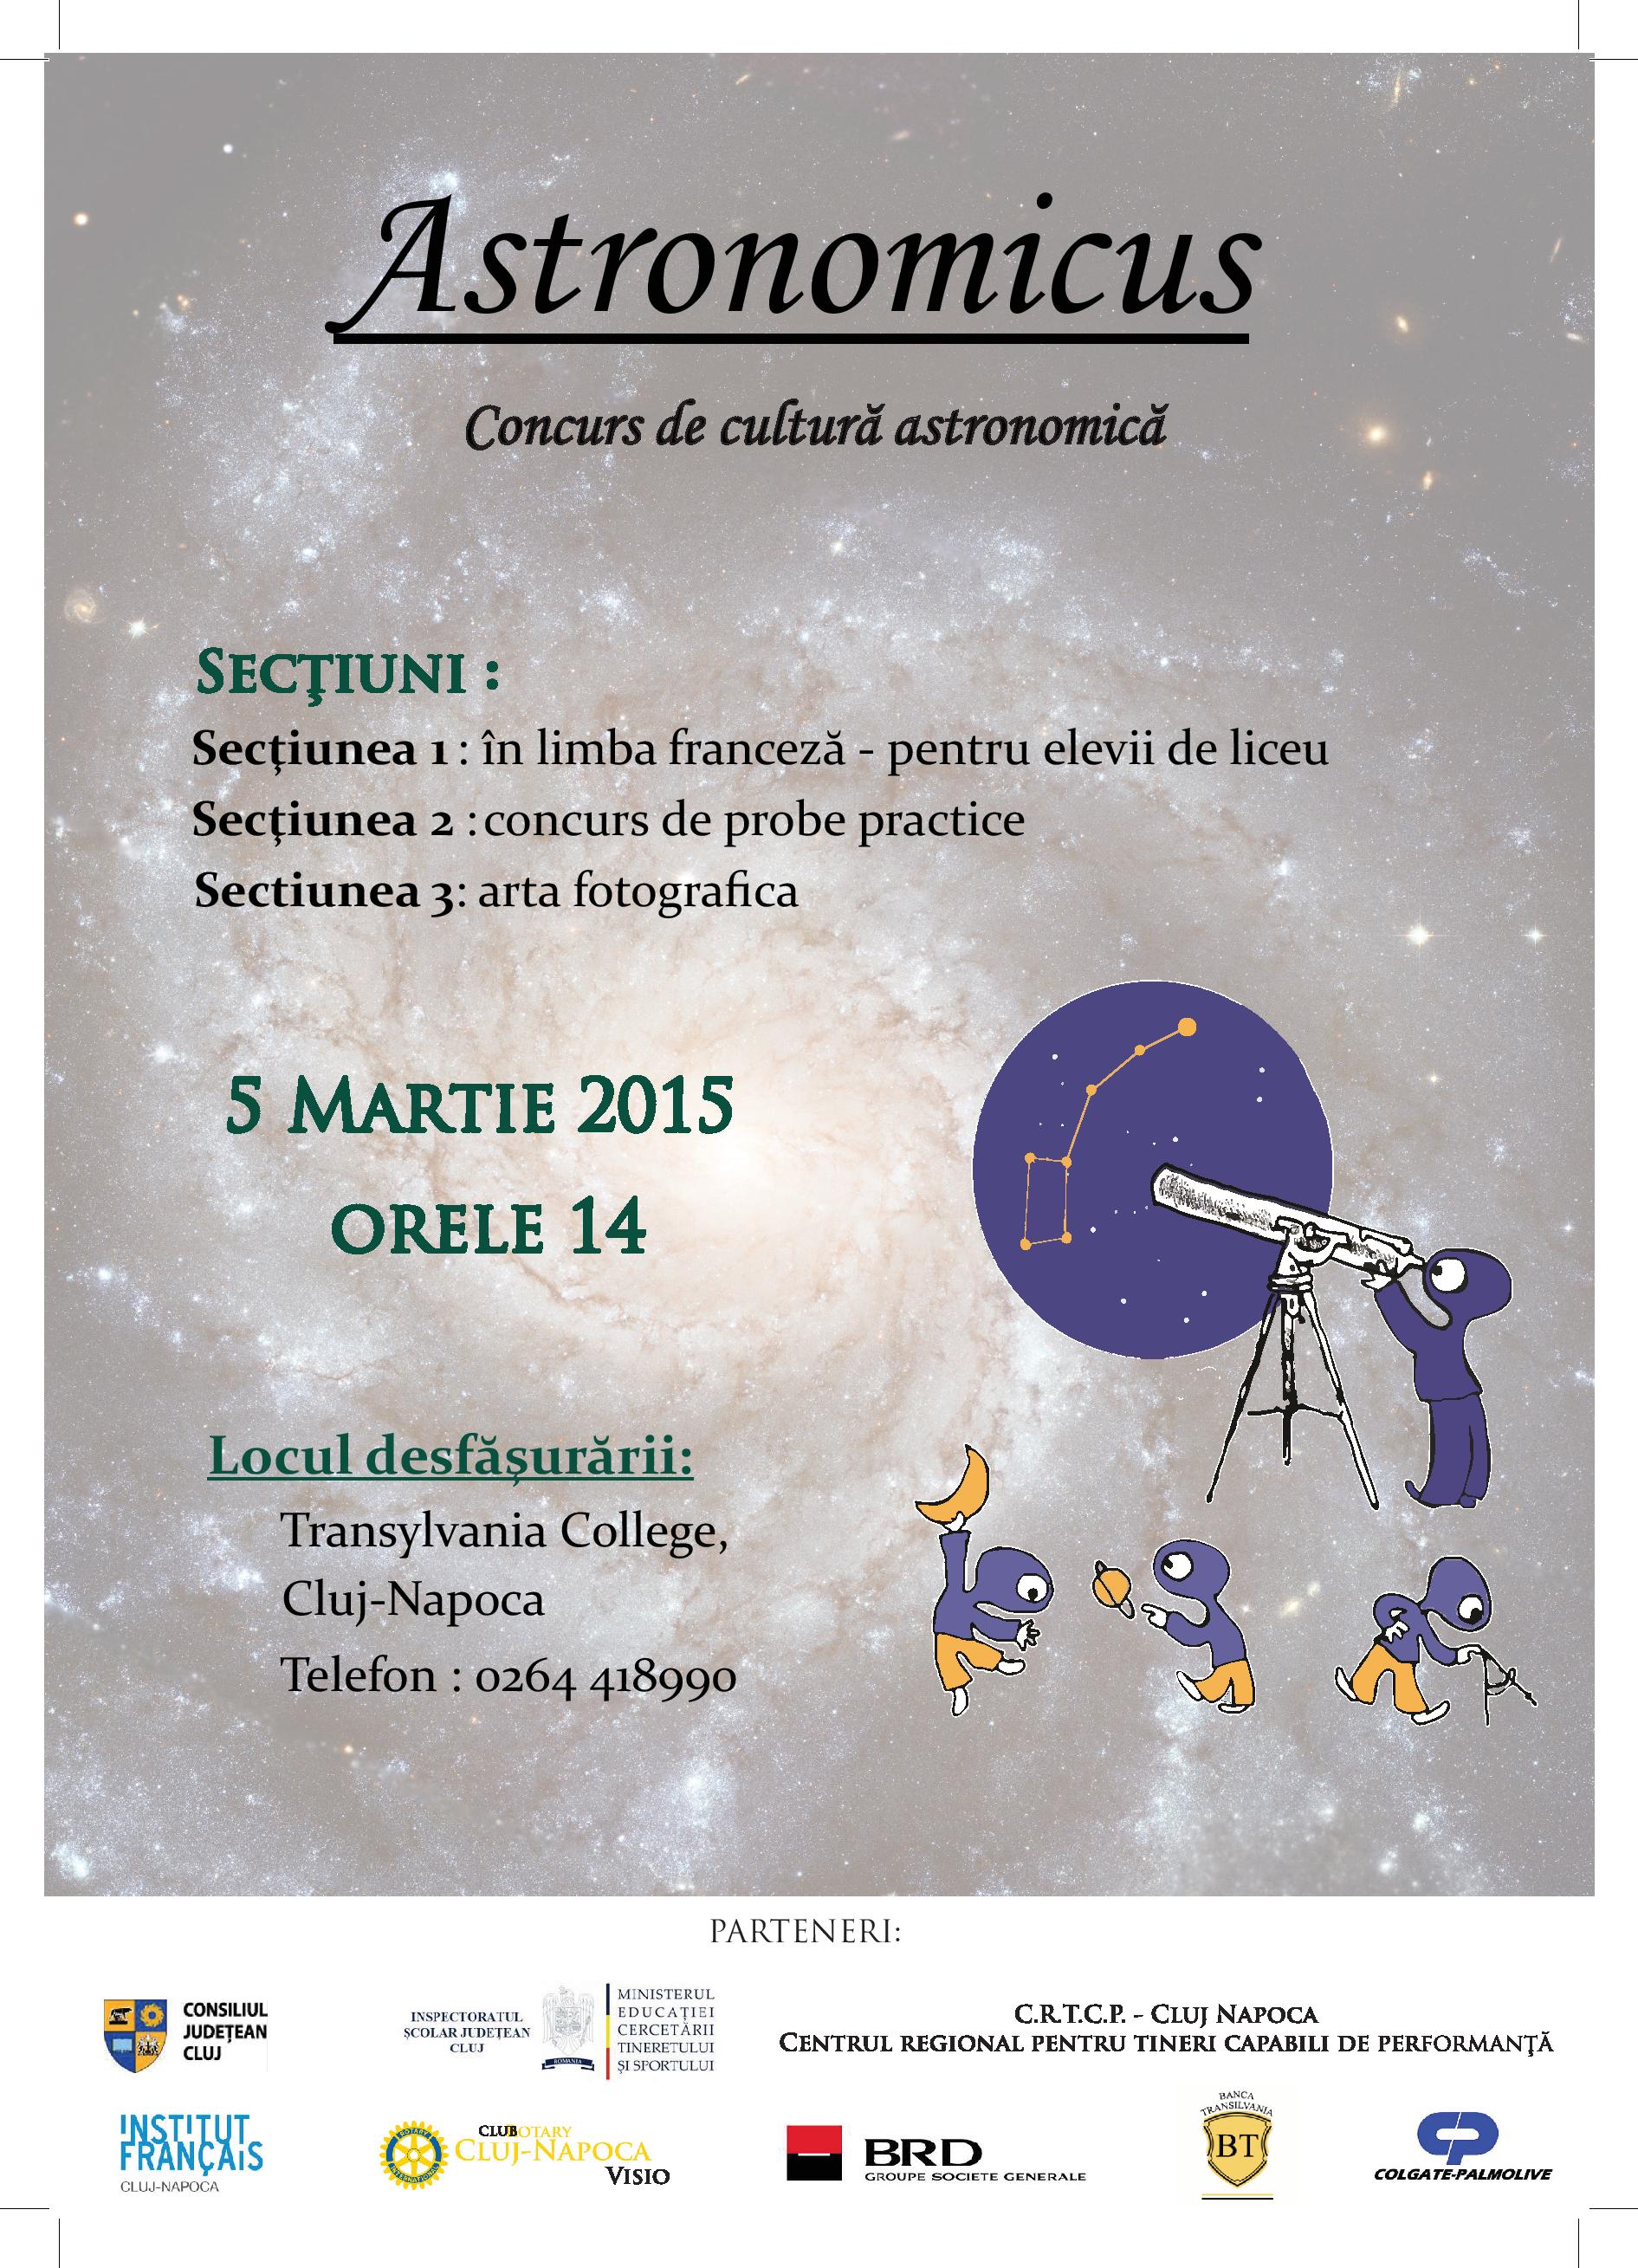 Astronomicus – Concurs de cultură astronomică pentru elevi